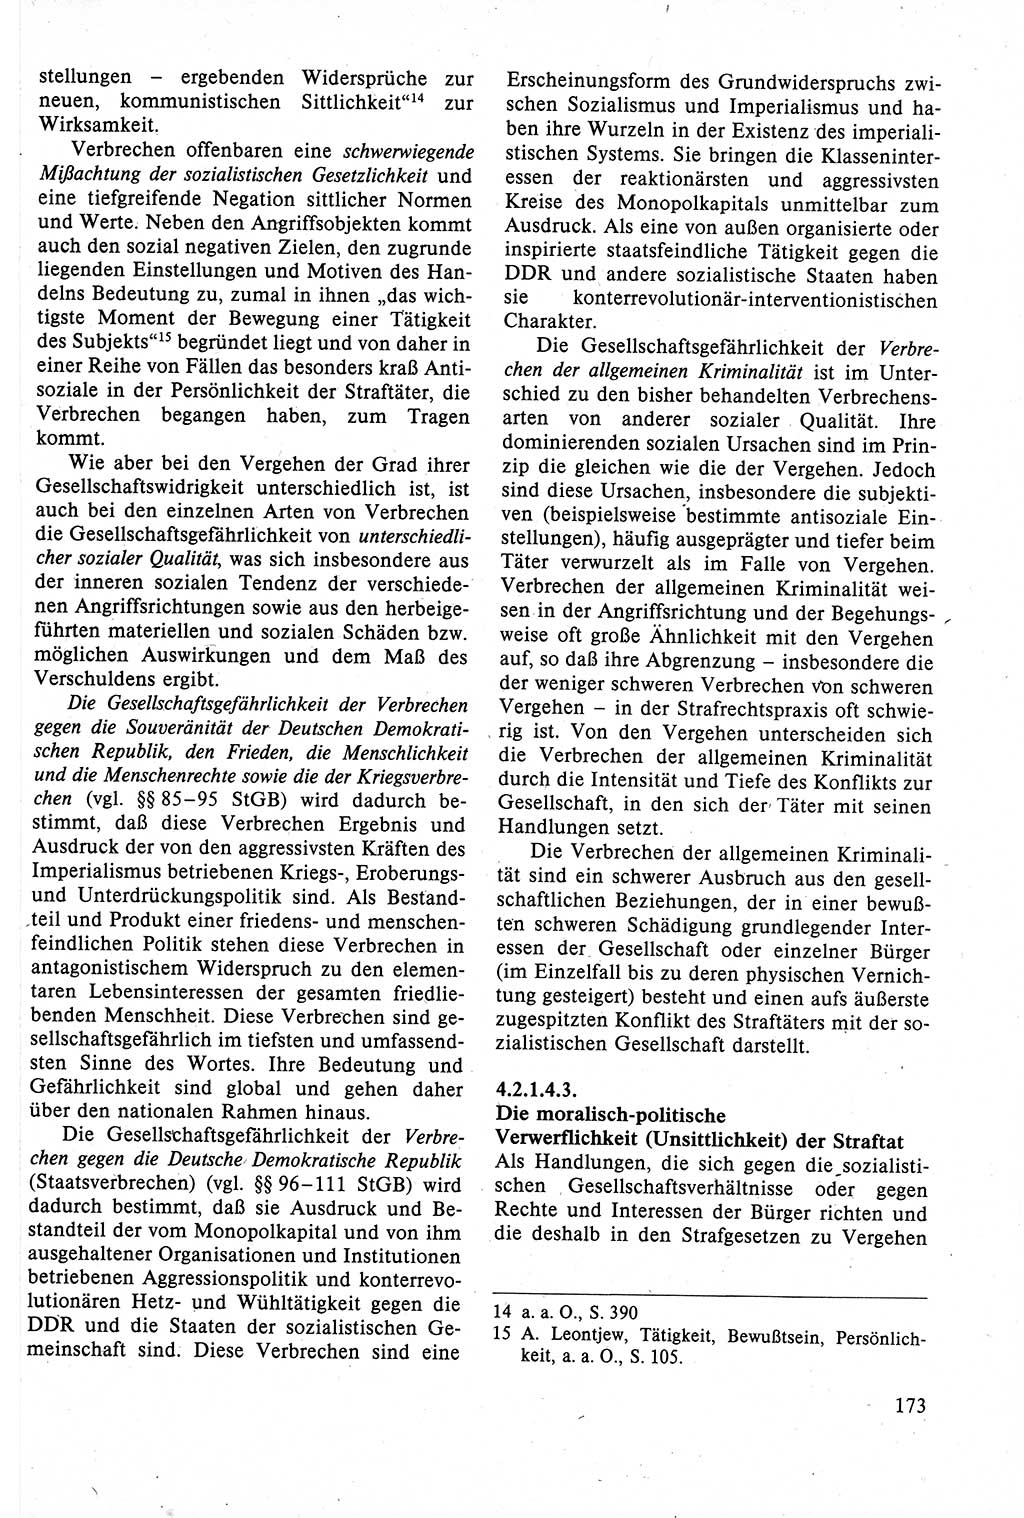 Strafrecht der DDR (Deutsche Demokratische Republik), Lehrbuch 1988, Seite 173 (Strafr. DDR Lb. 1988, S. 173)